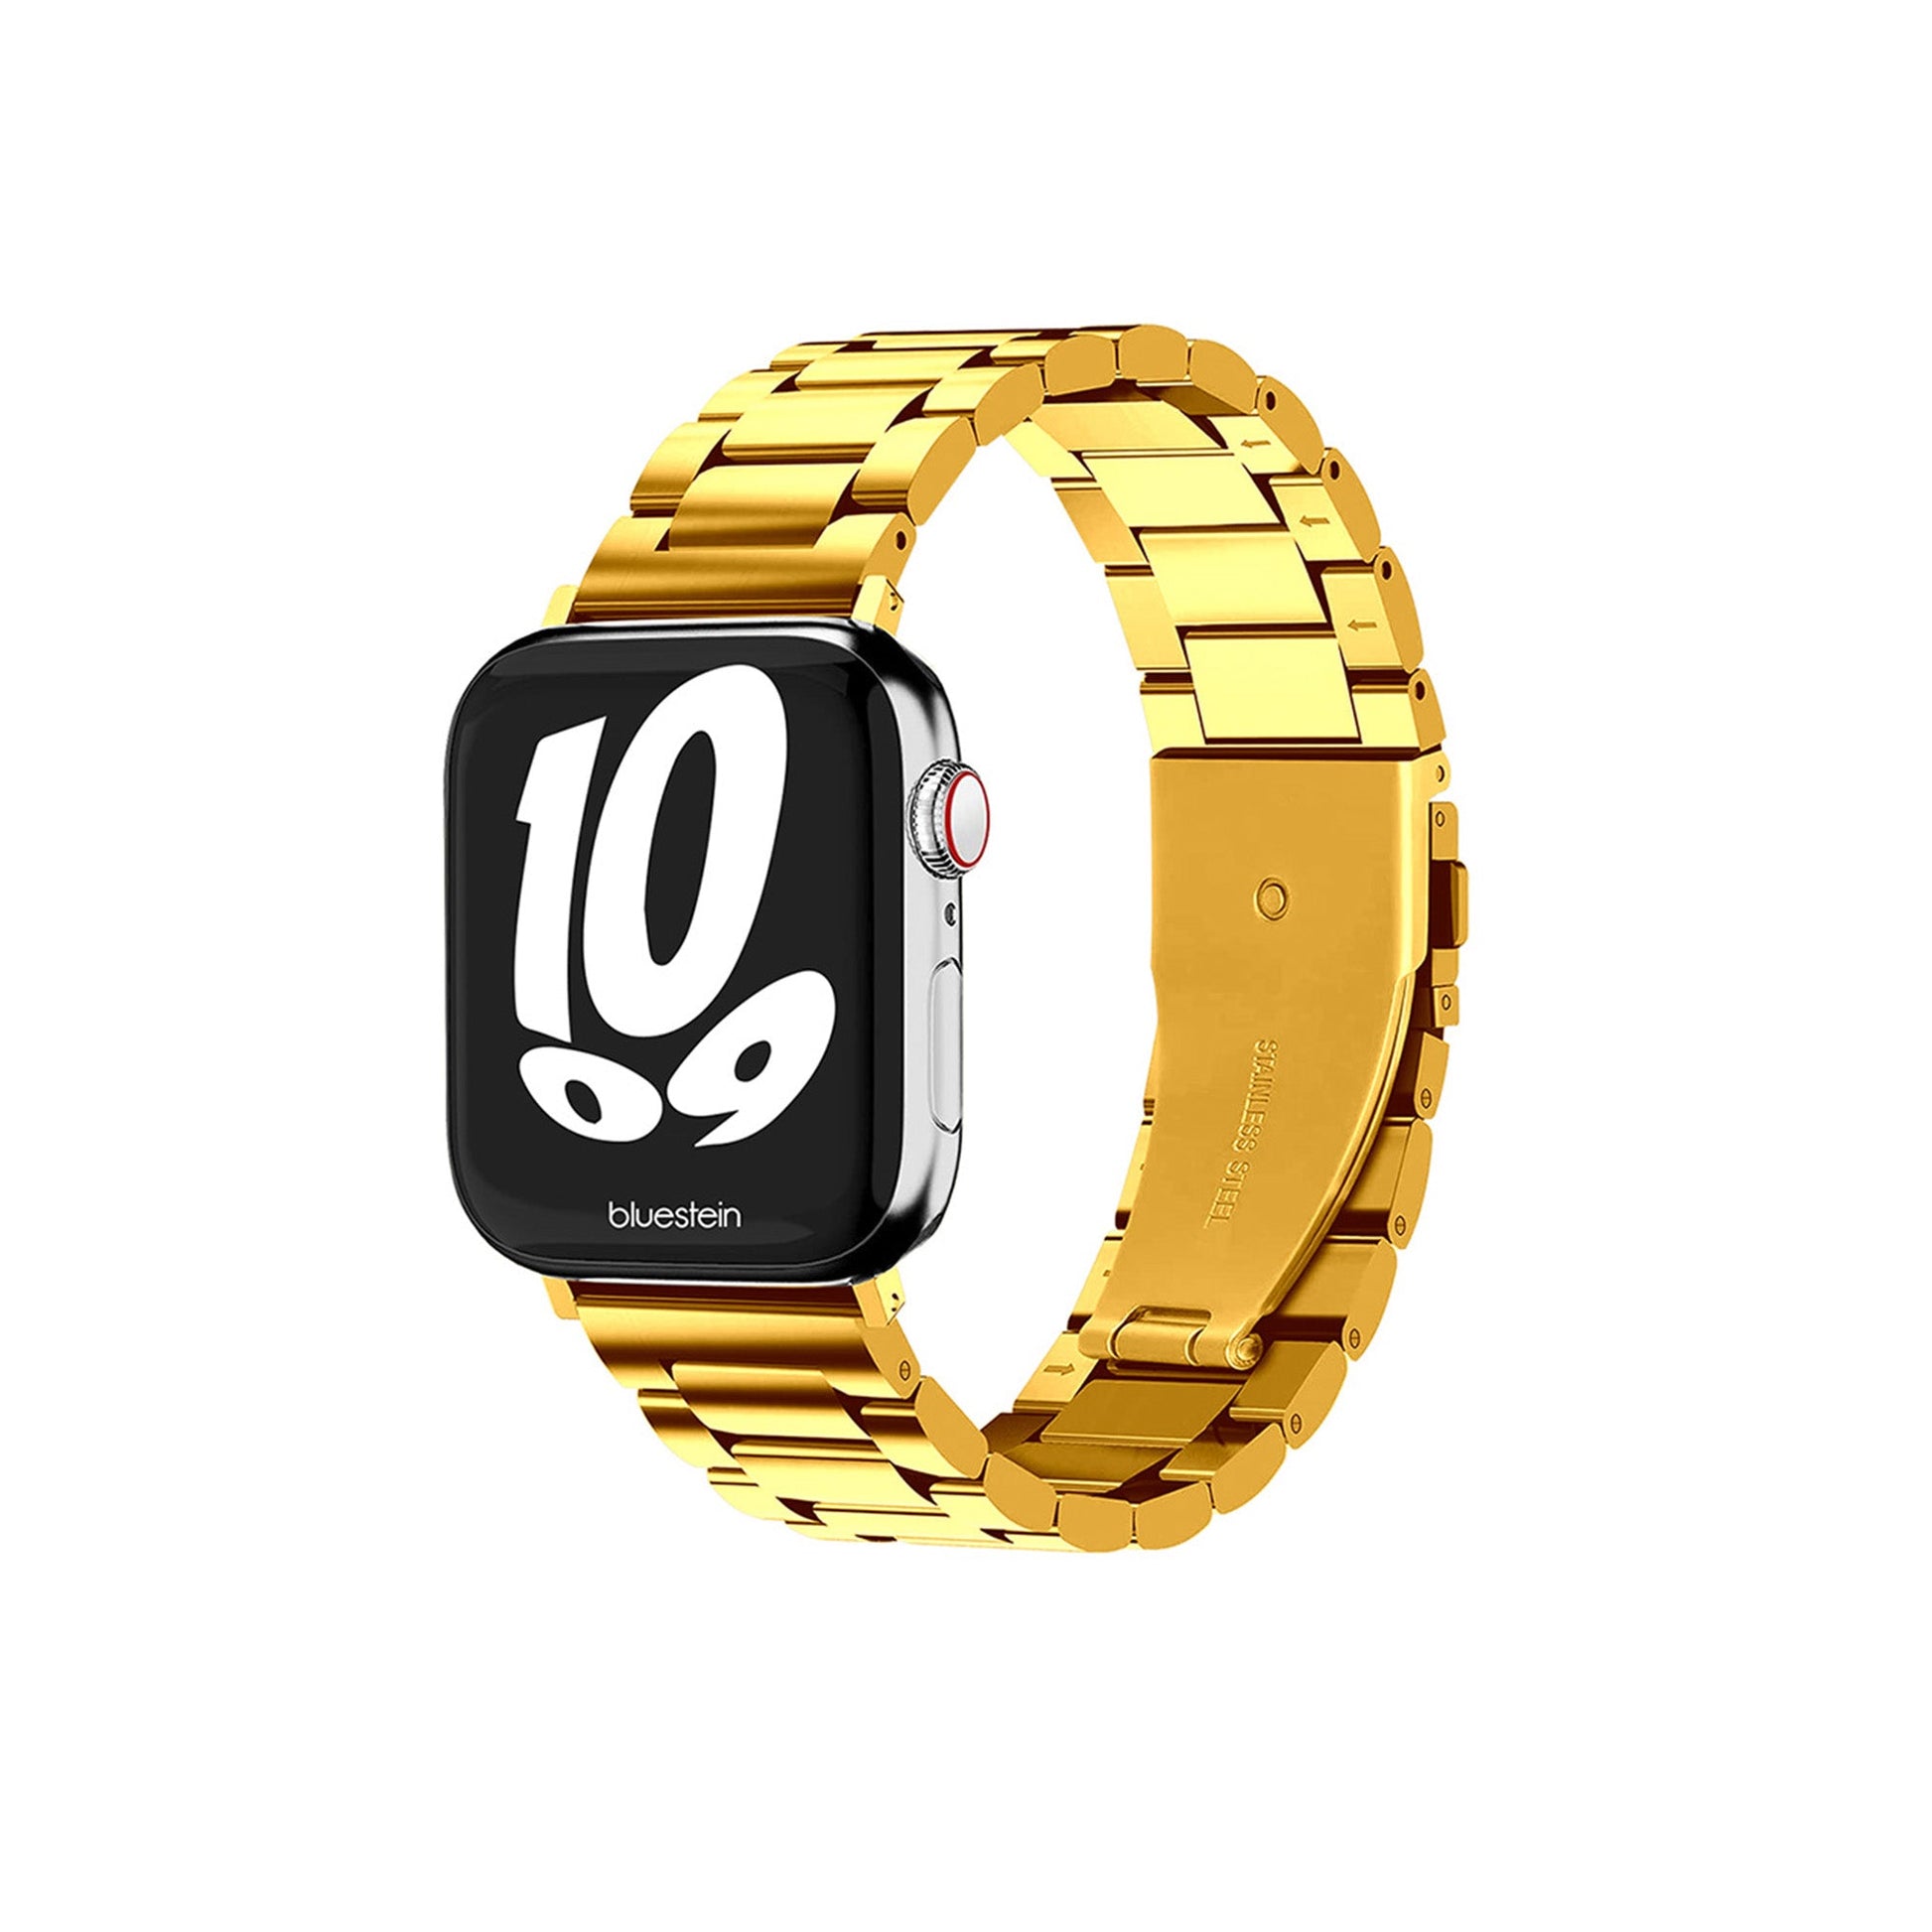 Metall Armband Prestige für Apple Watch - Bluestein